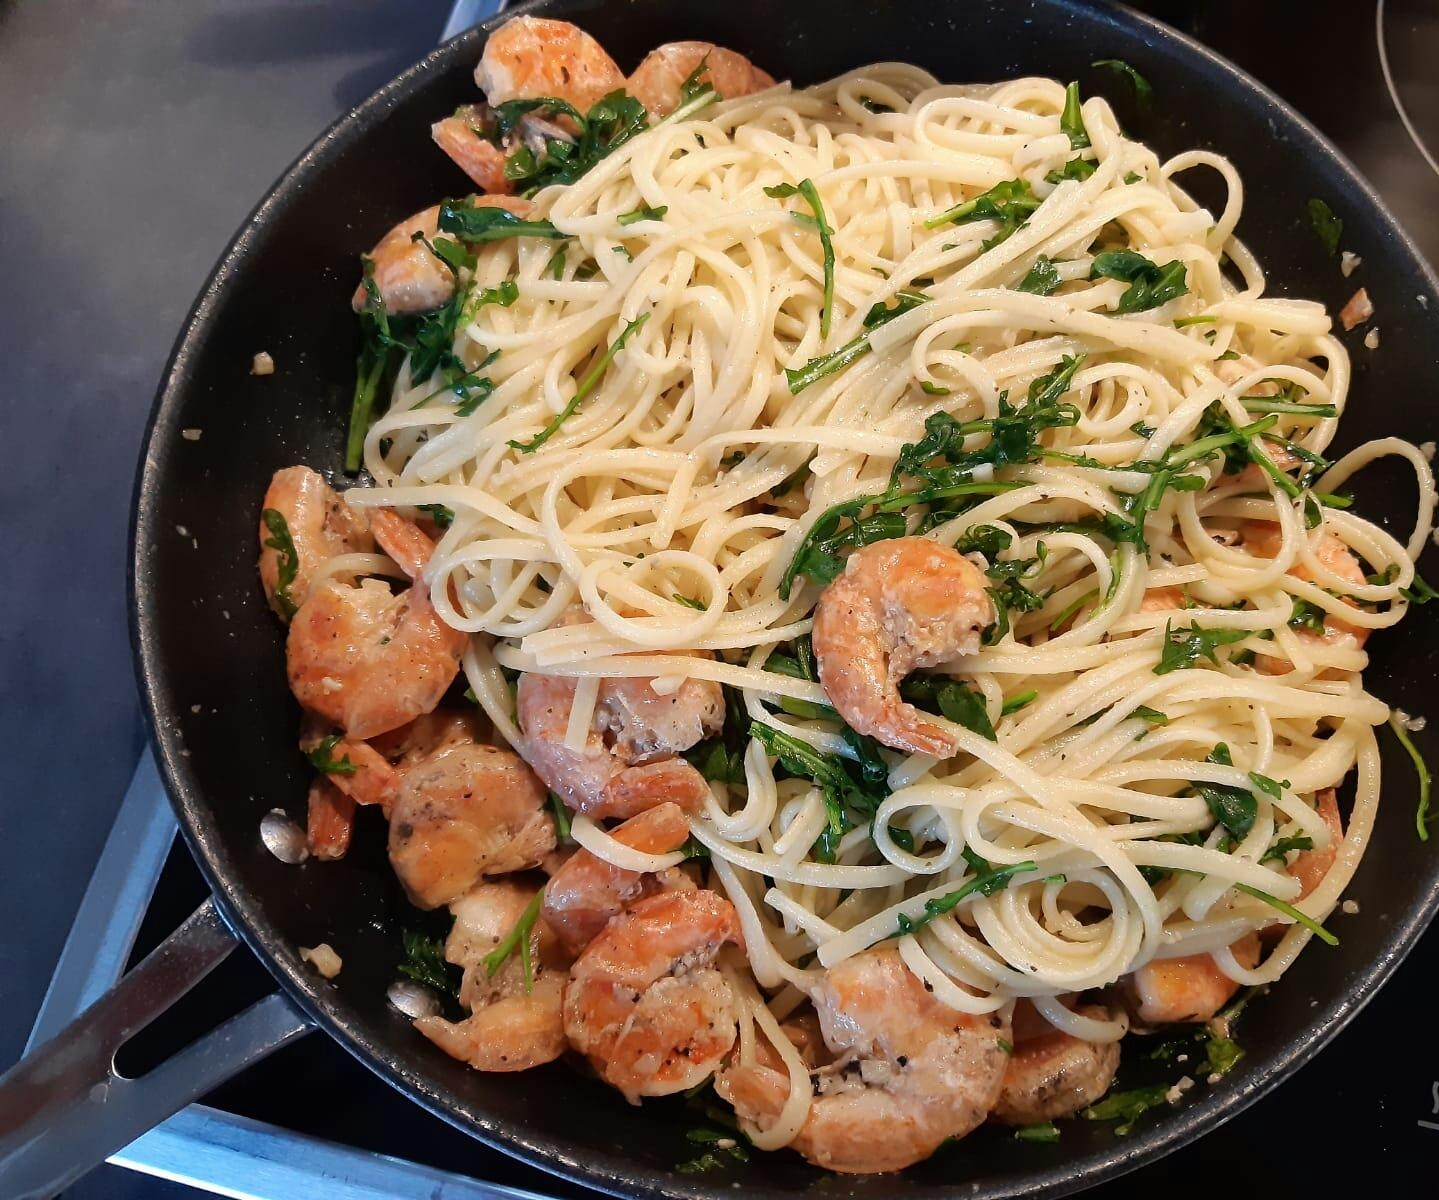 Heute gibt es bei uns Spaghetti mit Garnelen und Rucola
#essen #foodlover